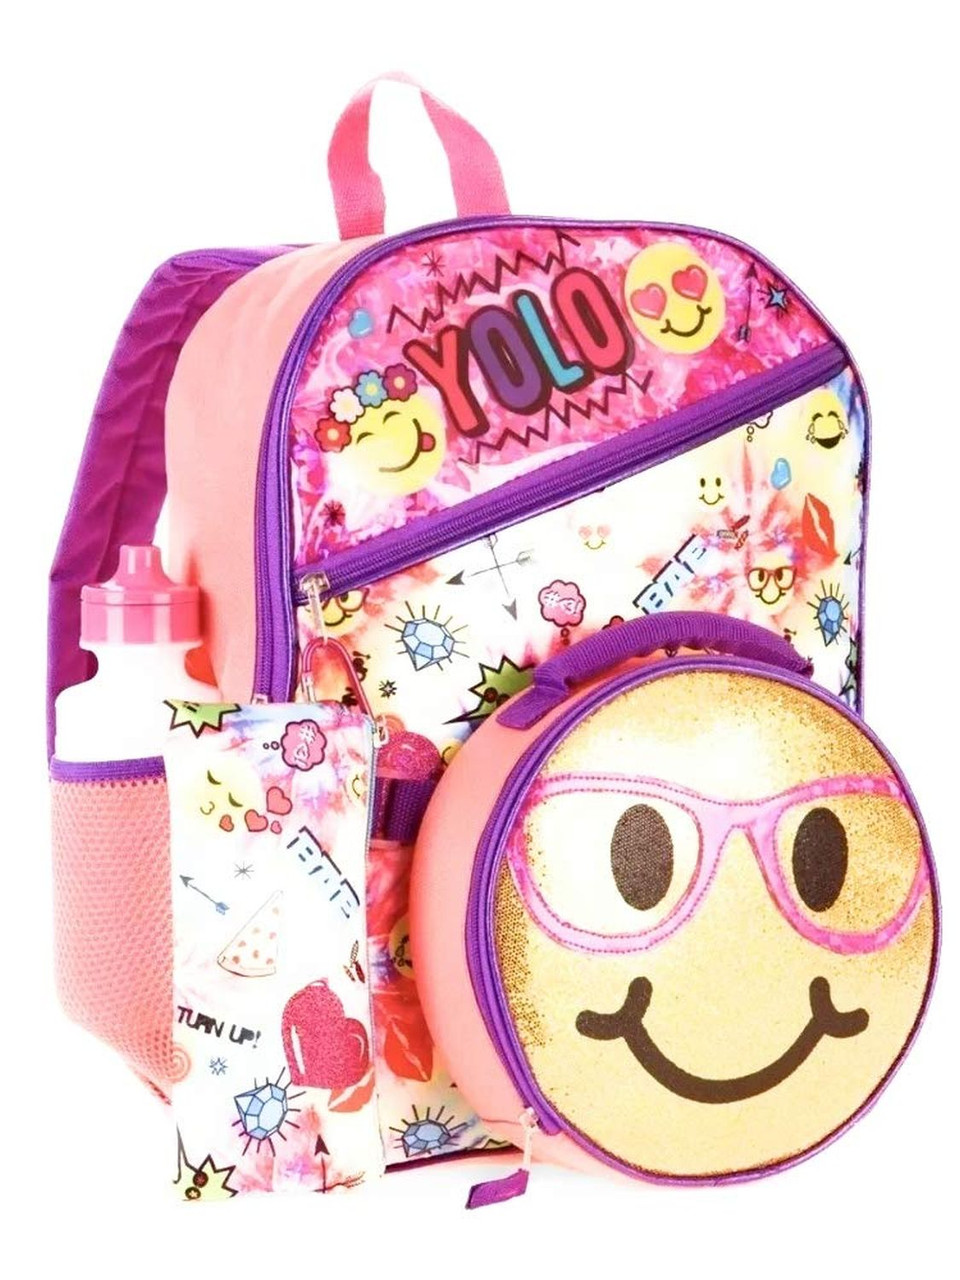 L.O.L. Surprise! 5-Piece Backpack & Lunch Bag Set